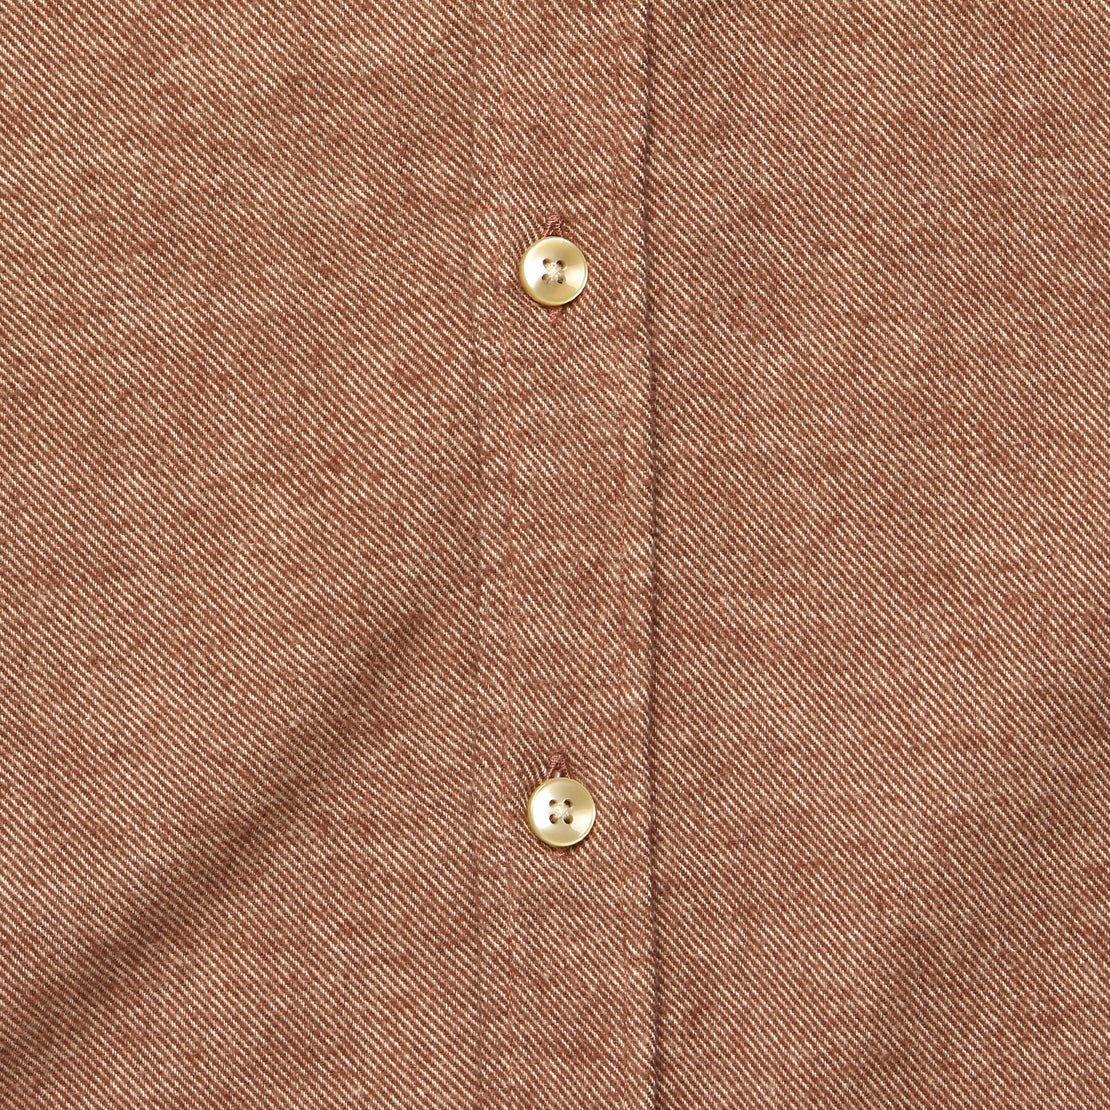 Teca Solid Flannel - Cinnamon - Portuguese Flannel - STAG Provisions - Tops - L/S Woven - Solid